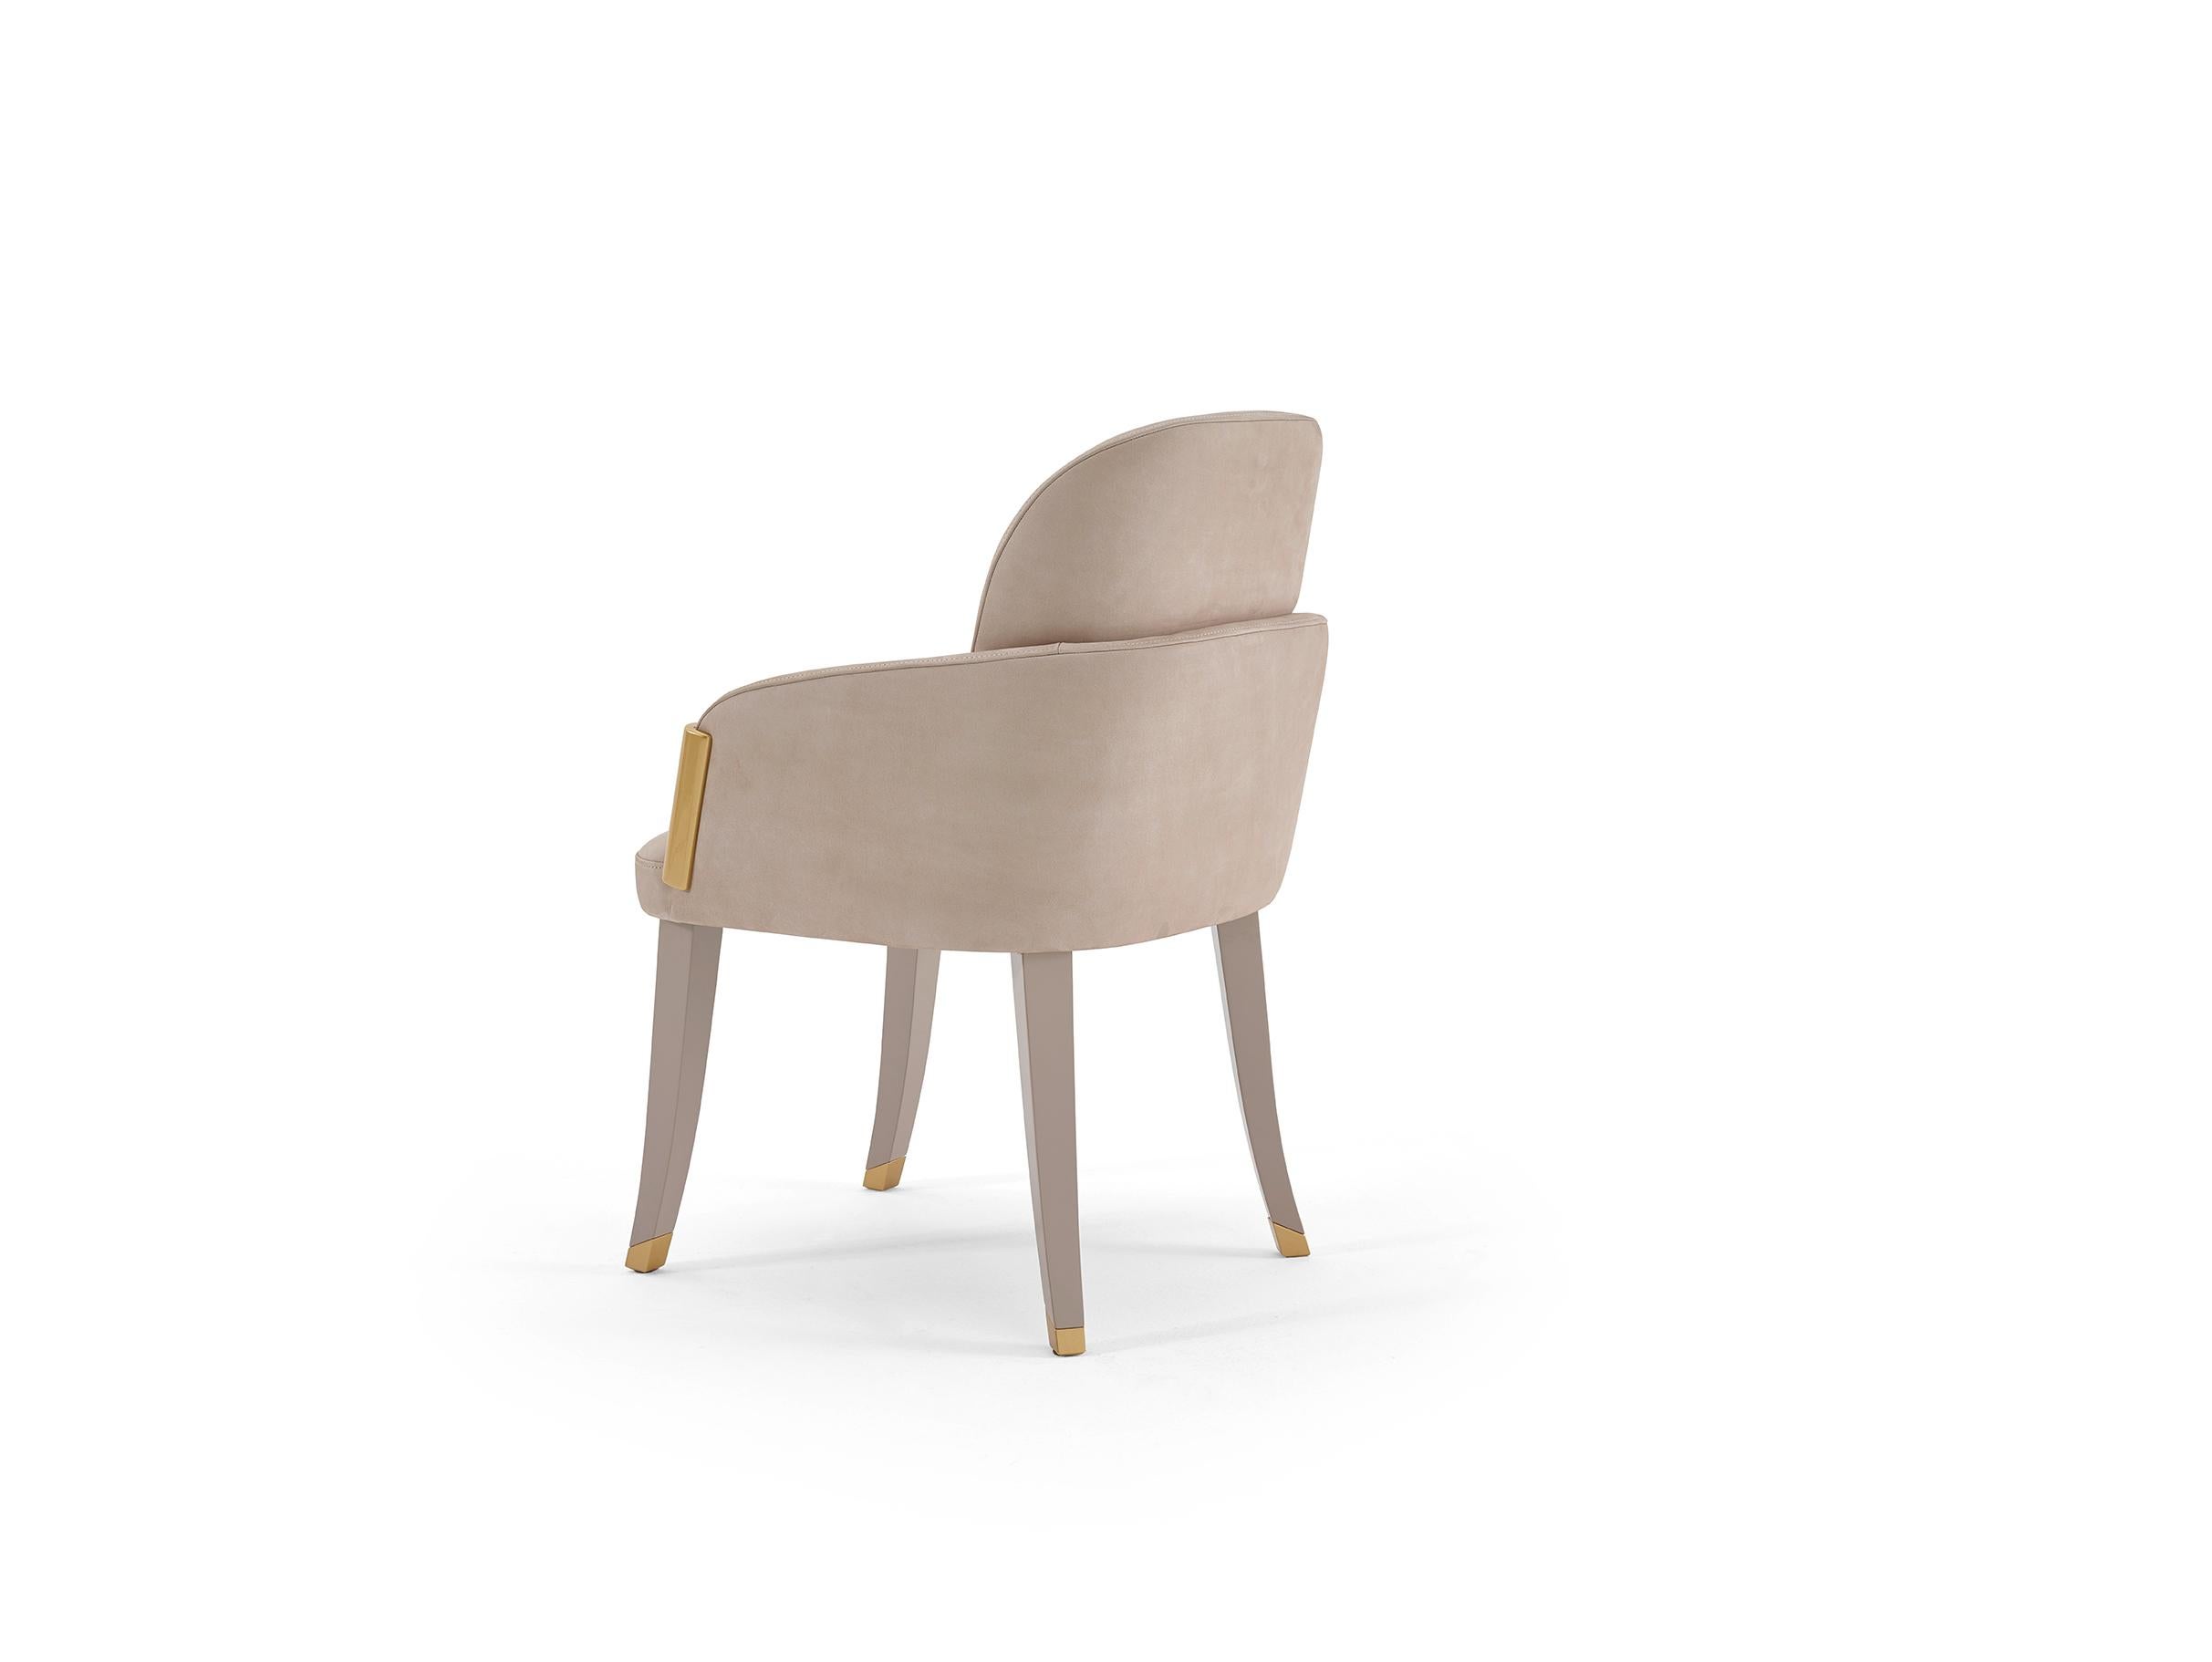 Künstlerisch handgefertigte Esszimmerstühle aus massiver Eiche in grau-beige lackiert.
Der Sessel wird mit grau-beigem Premium-Samt angeboten, der mit der Oberfläche des Gestells harmoniert.
Die Details sind in poliertem Gold lackiert.
100%